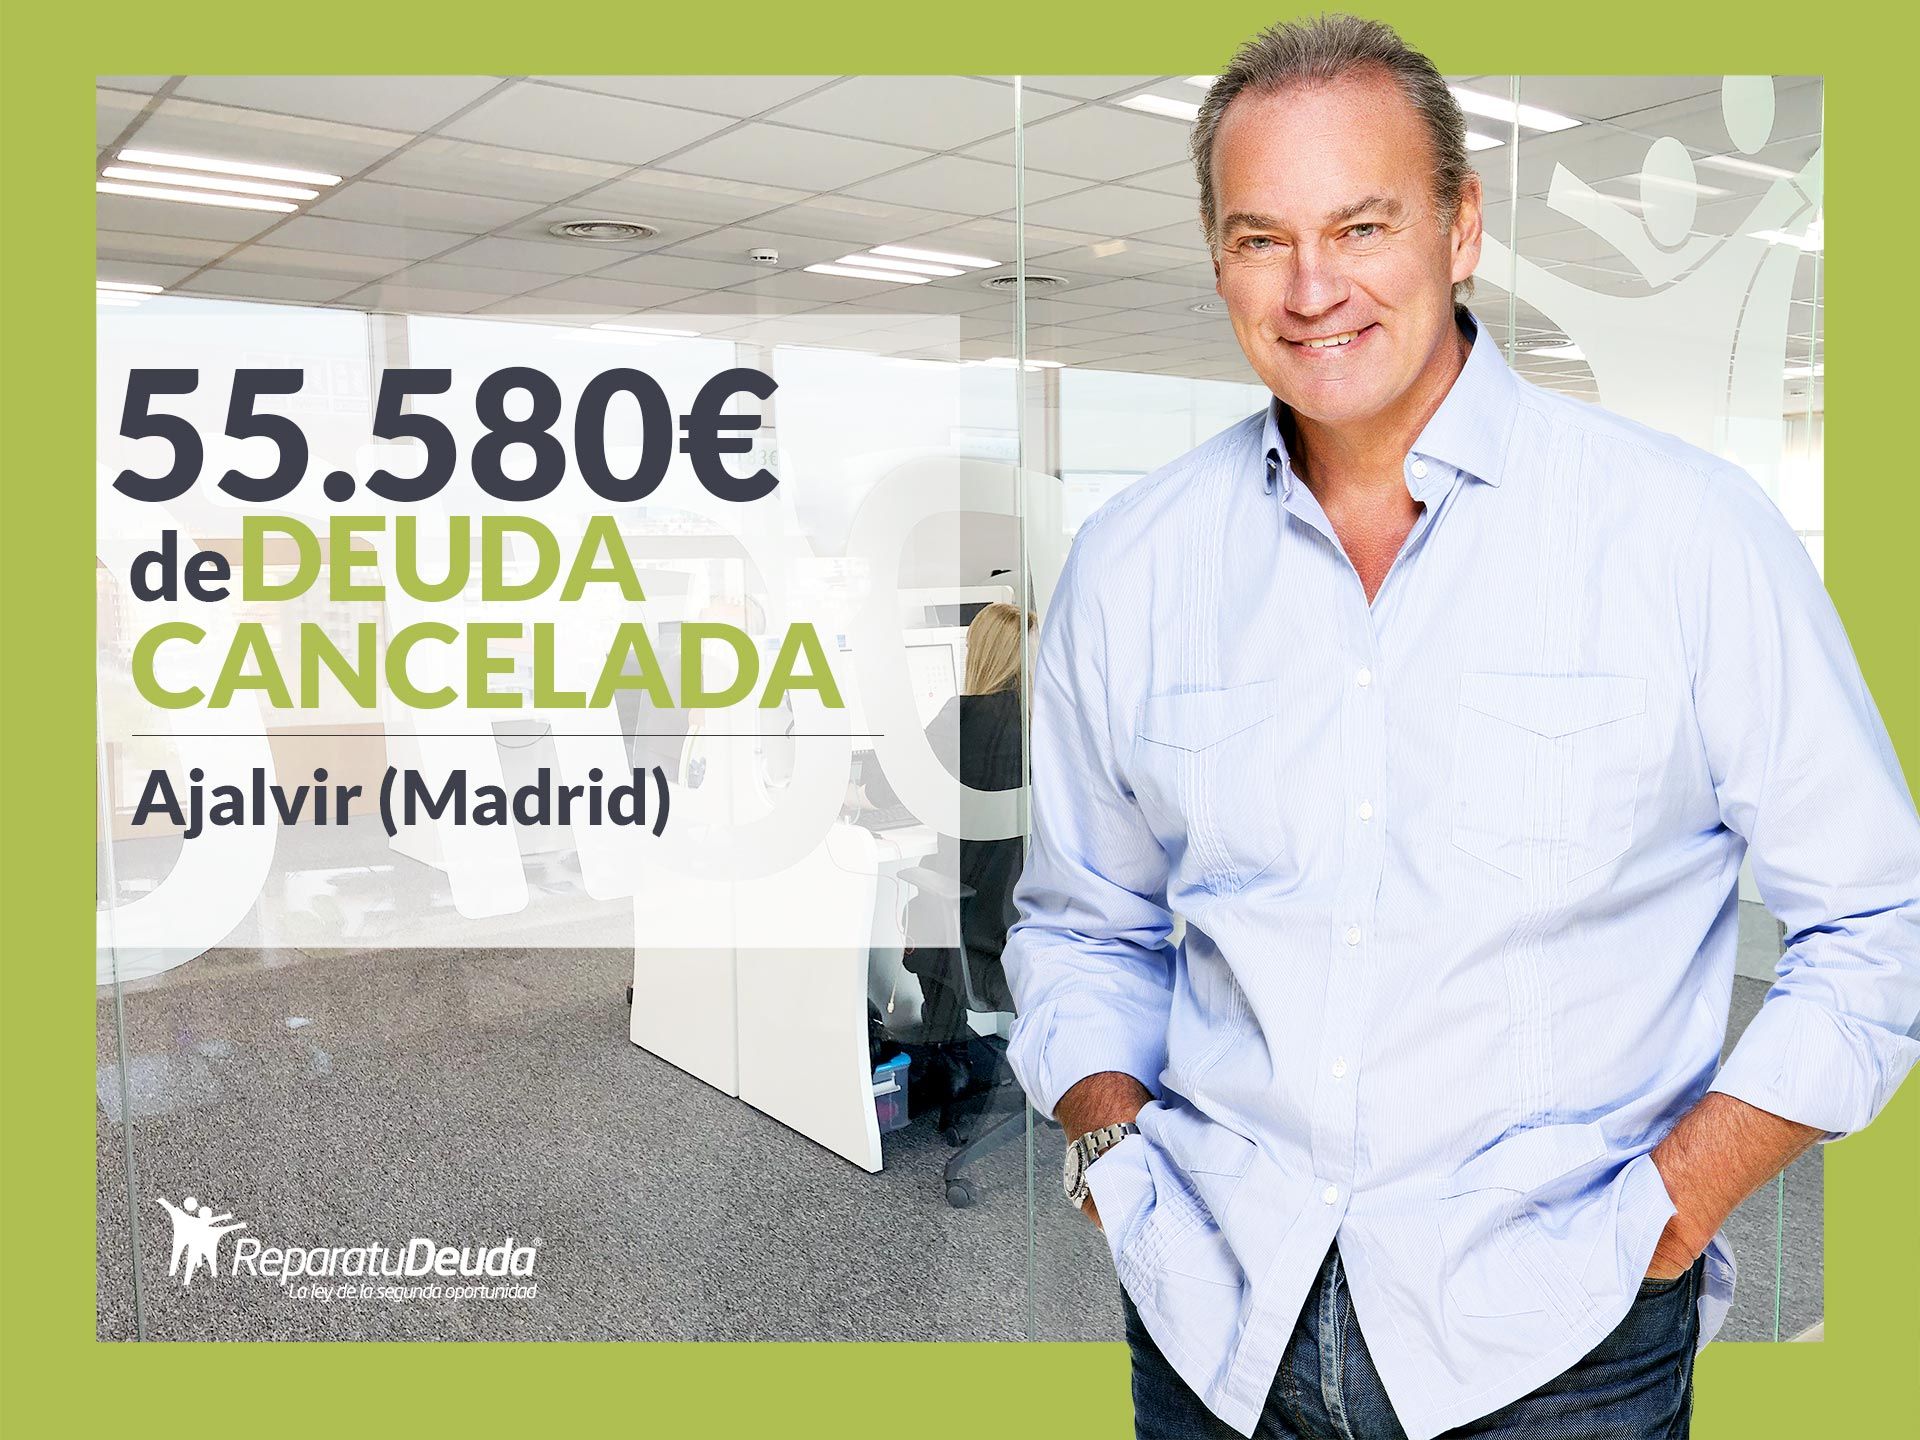 Repara tu Deuda Abogados cancela 55.580? en Ajalvir (Madrid) con la Ley de la Segunda Oportunidad